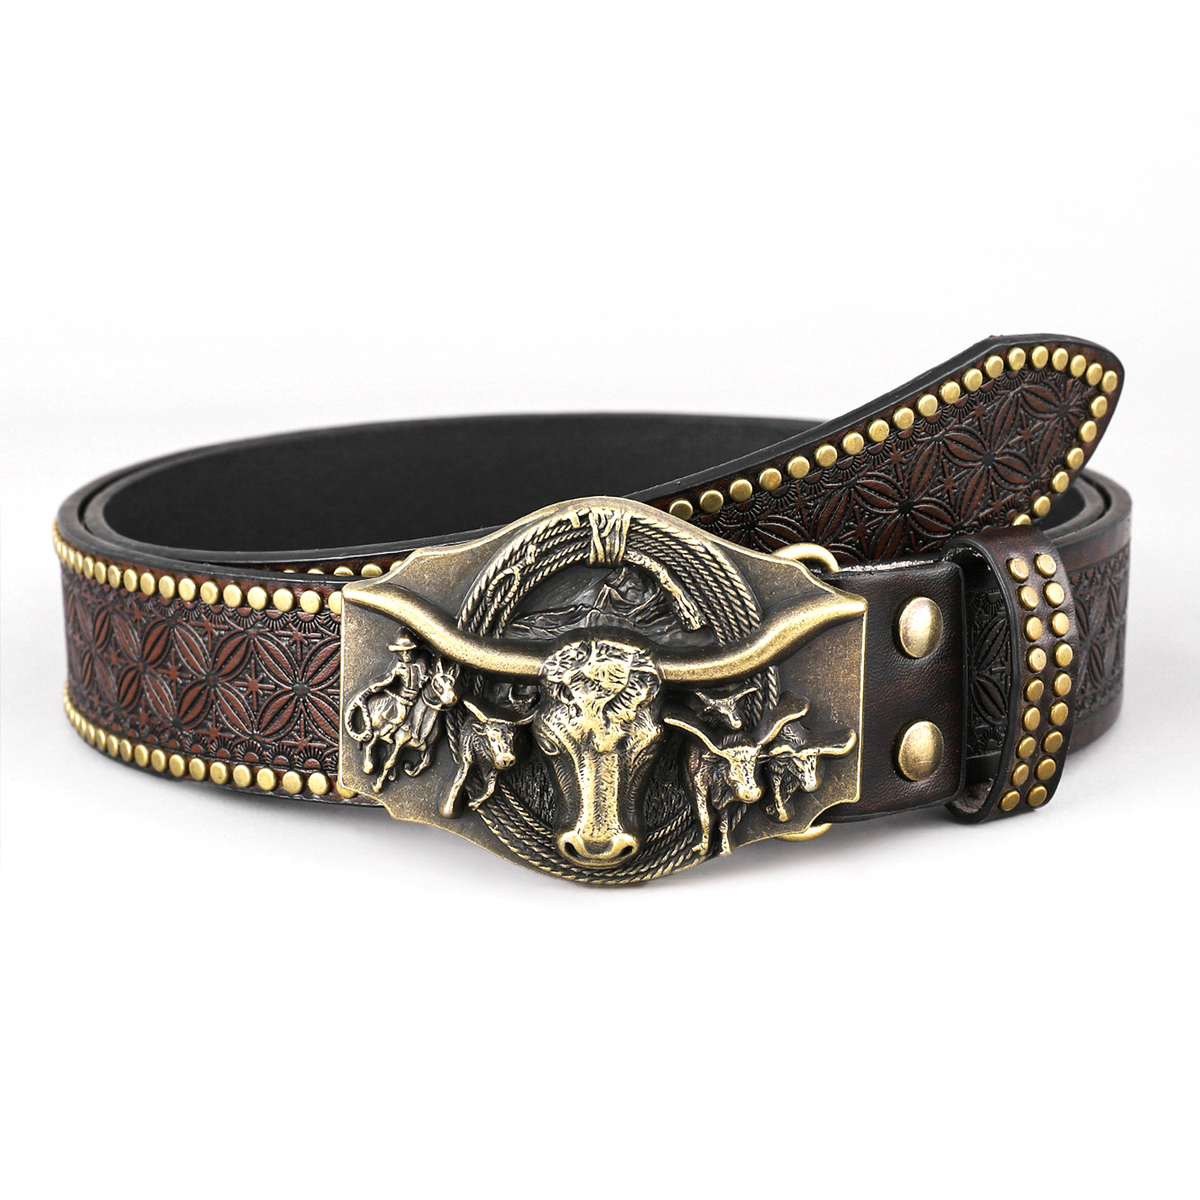 Western Cowboy Buckle Leather Belt B5009